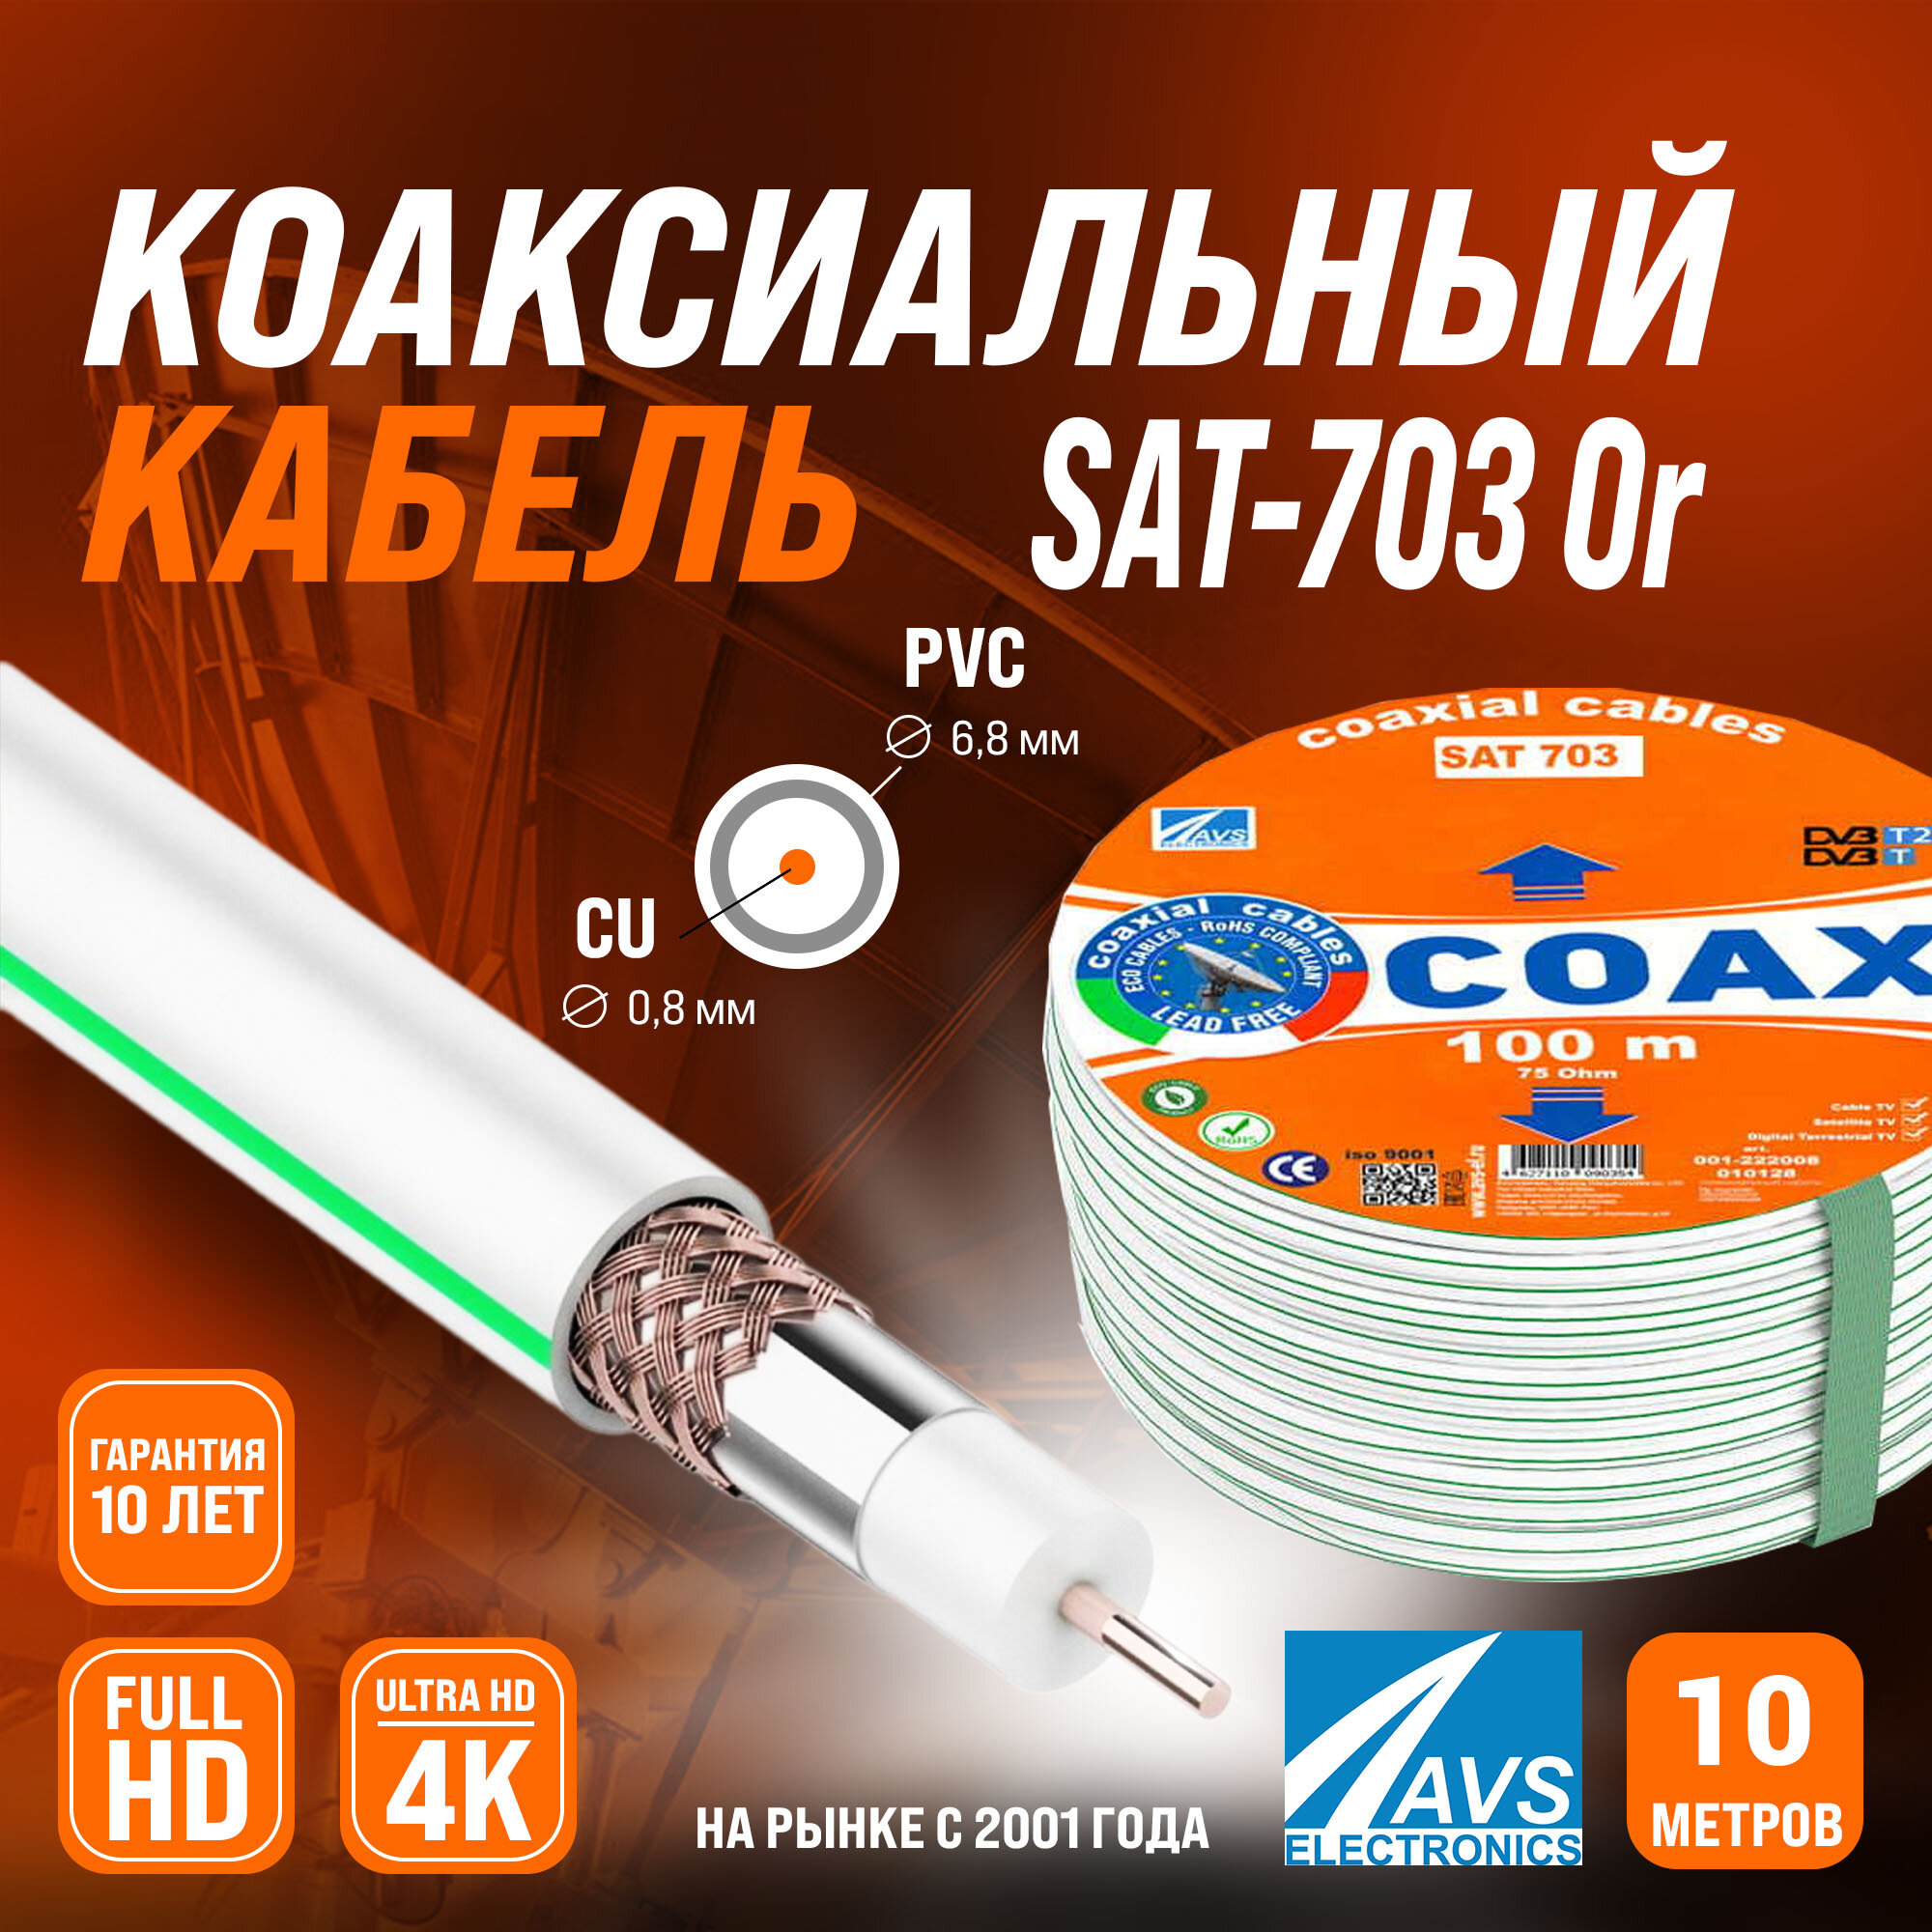 Медный телевизионный коаксиальный кабель 10 м SAT-703 Cu Or AVS Electronics антенный провод для спутниковой тарелки, цифрового, эфирного тв 10 метров 001-222008/10